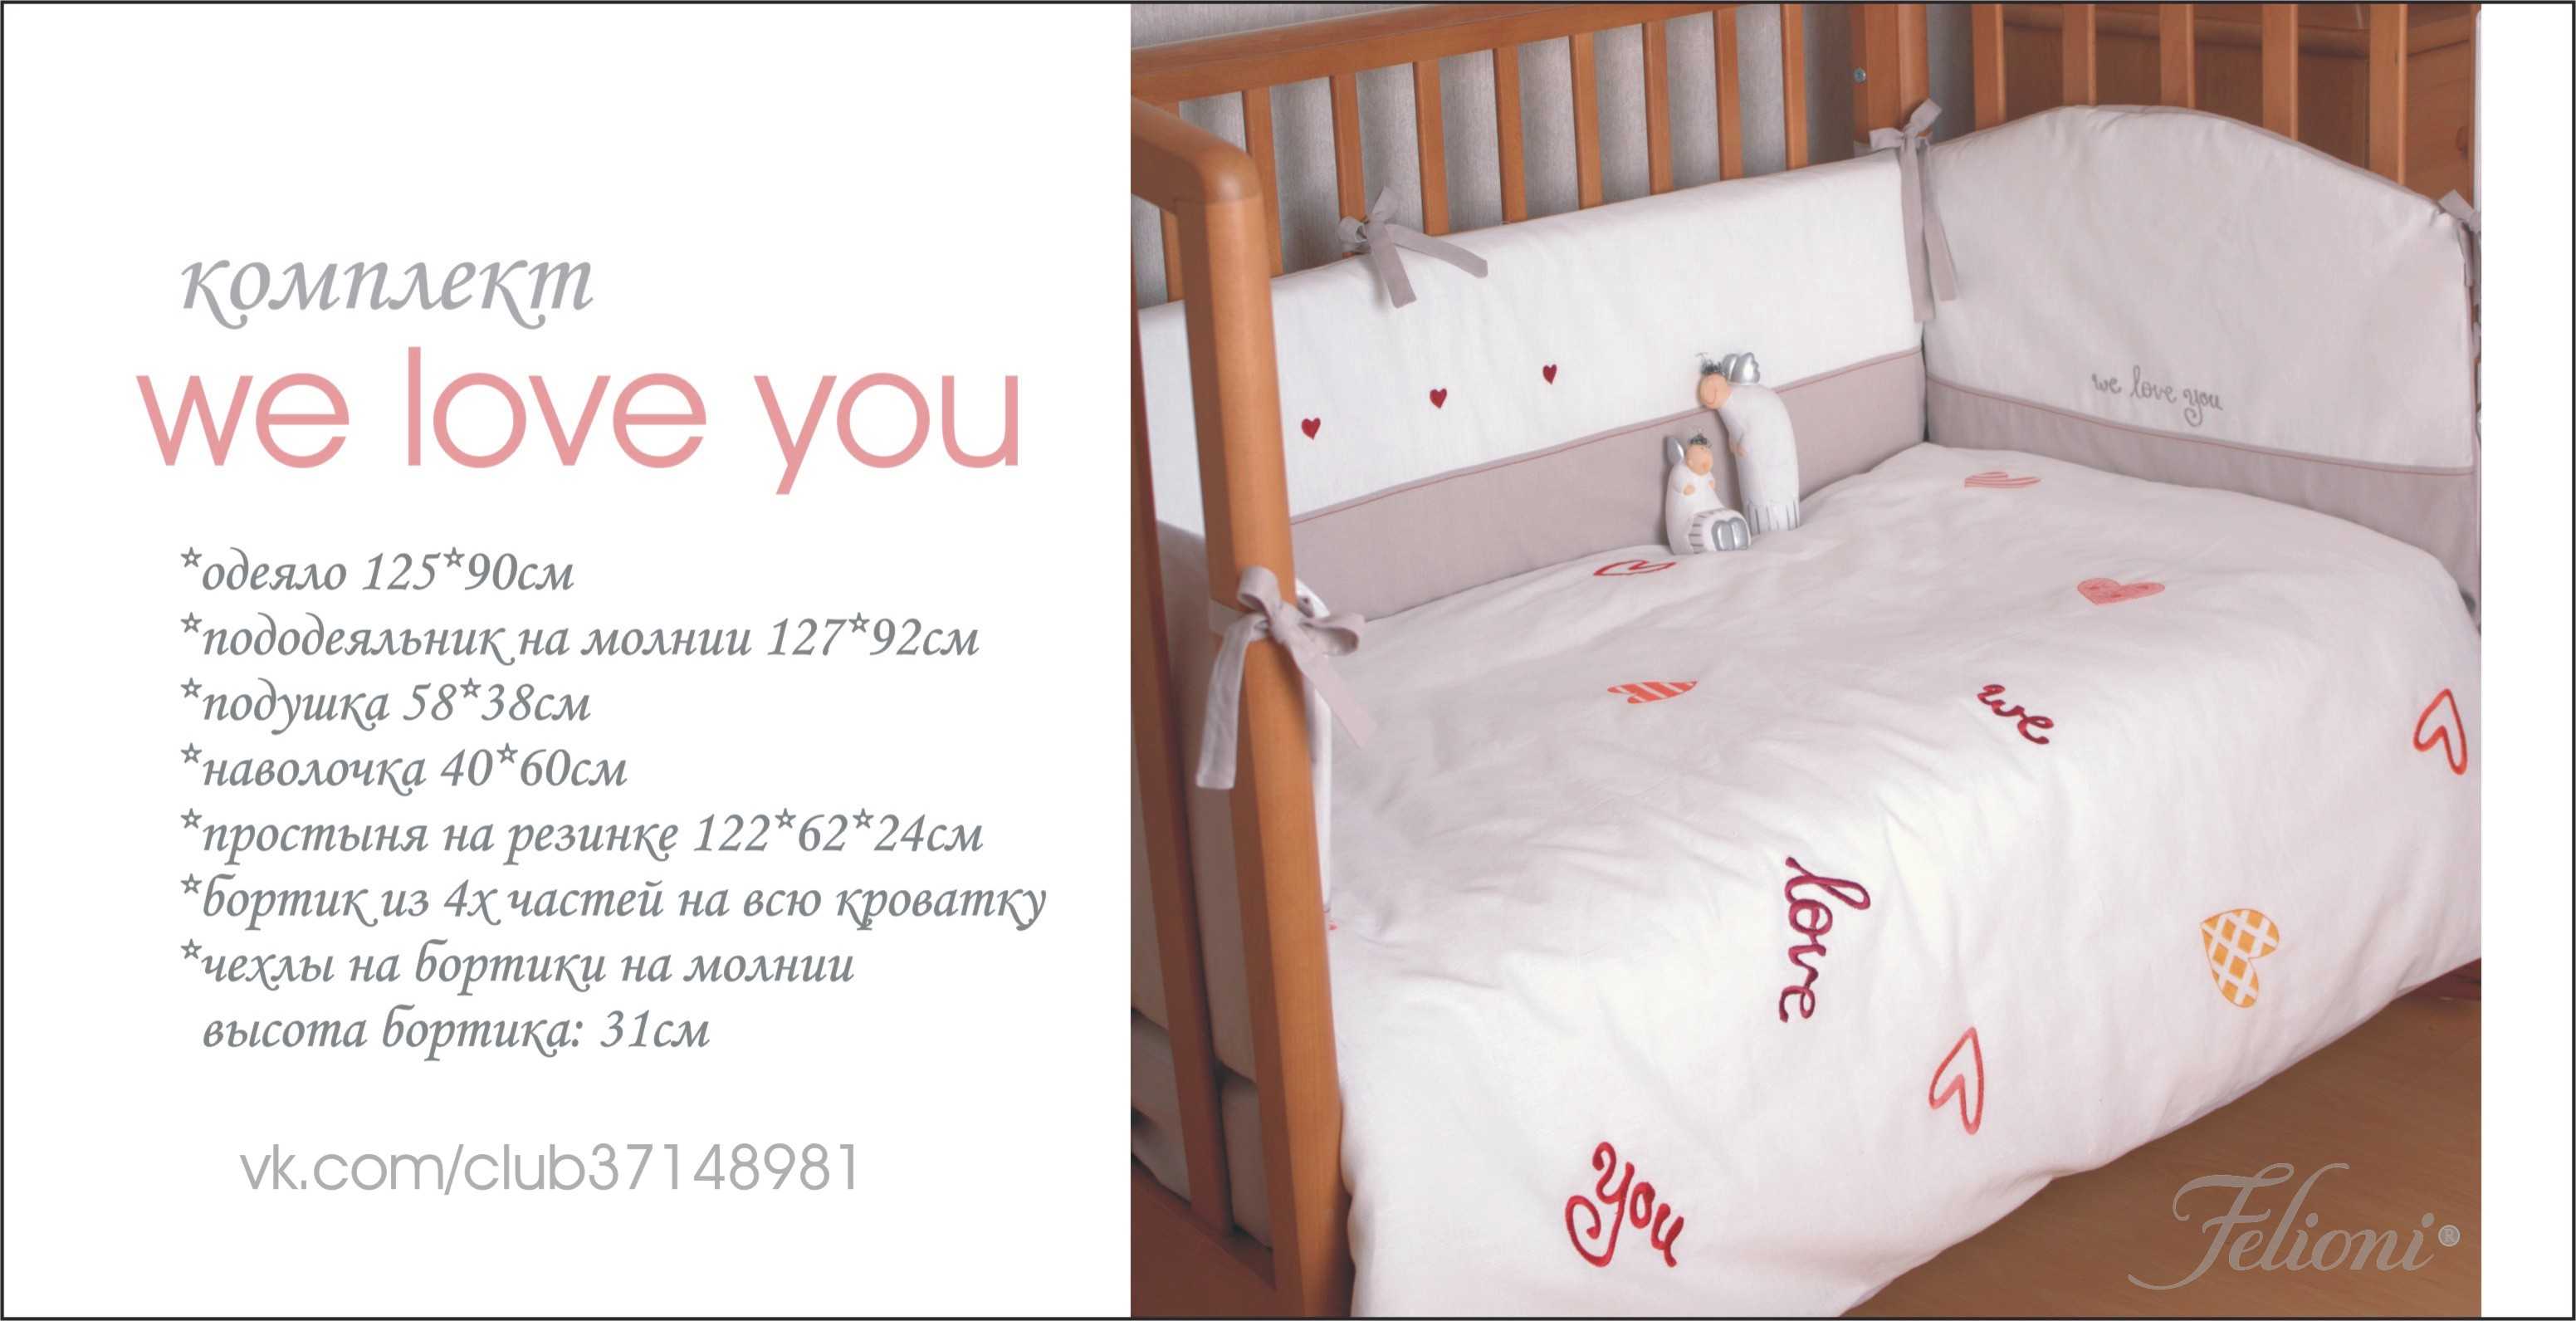 Размеры белья детской кроватки. Размер детского постельного белья для кроватки 120х60. Размер детского одеяла в кроватку стандарт для новорожденн. Размер постельного белья в детскую кроватку 180х90. Комплект детского белья в кроватку Размеры.